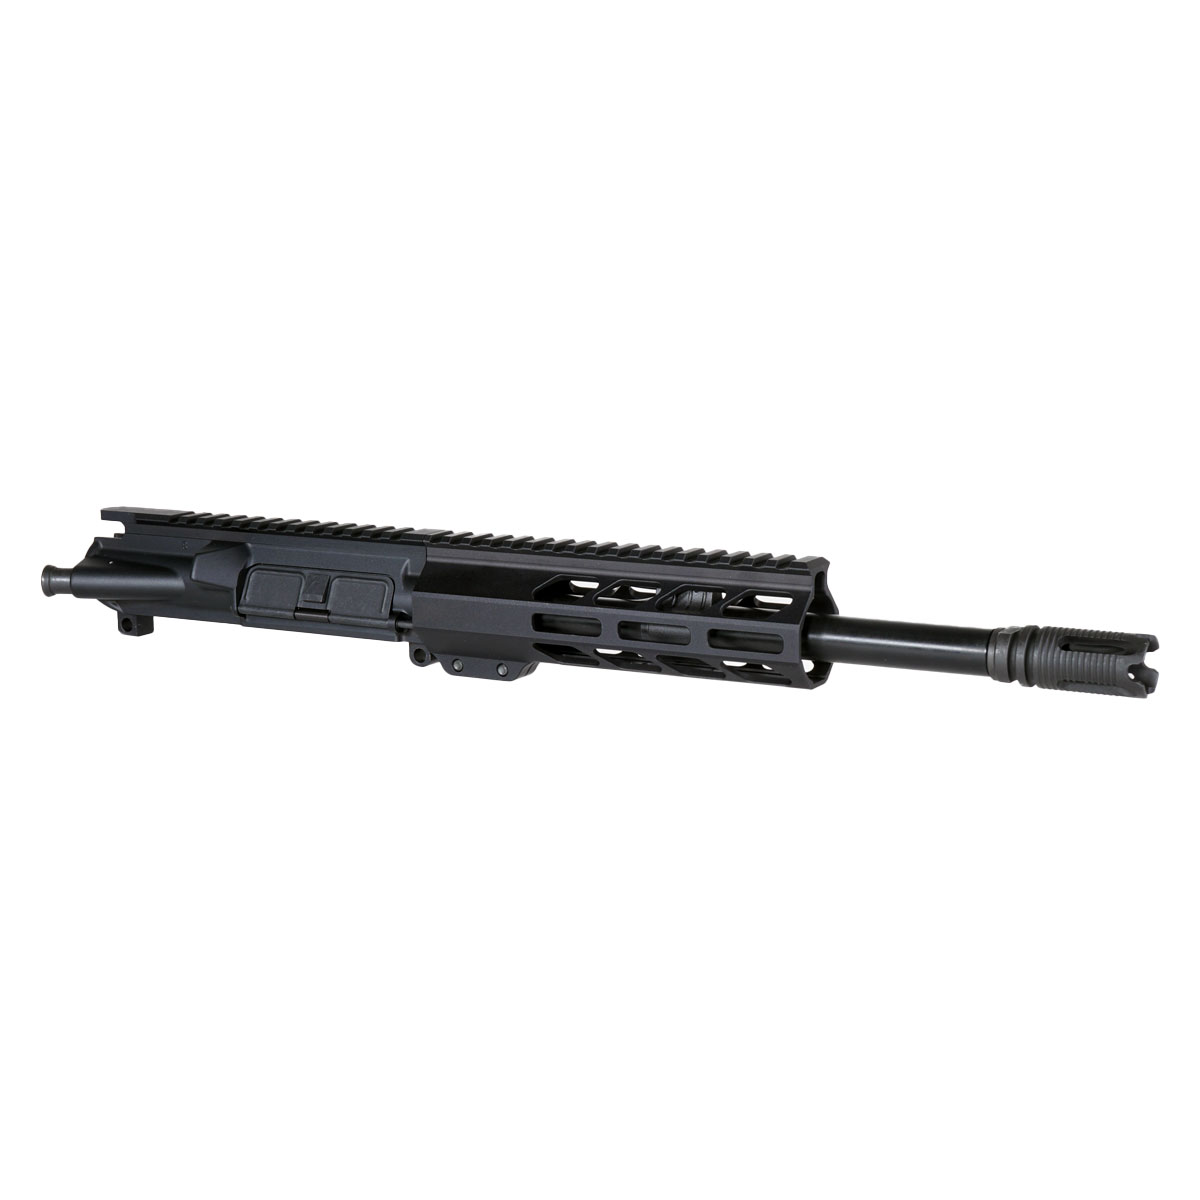 Davidson Defense 'Star Beam' 10.5-inch AR-15 .300BLK Nitride Pistol Upper Build Kit